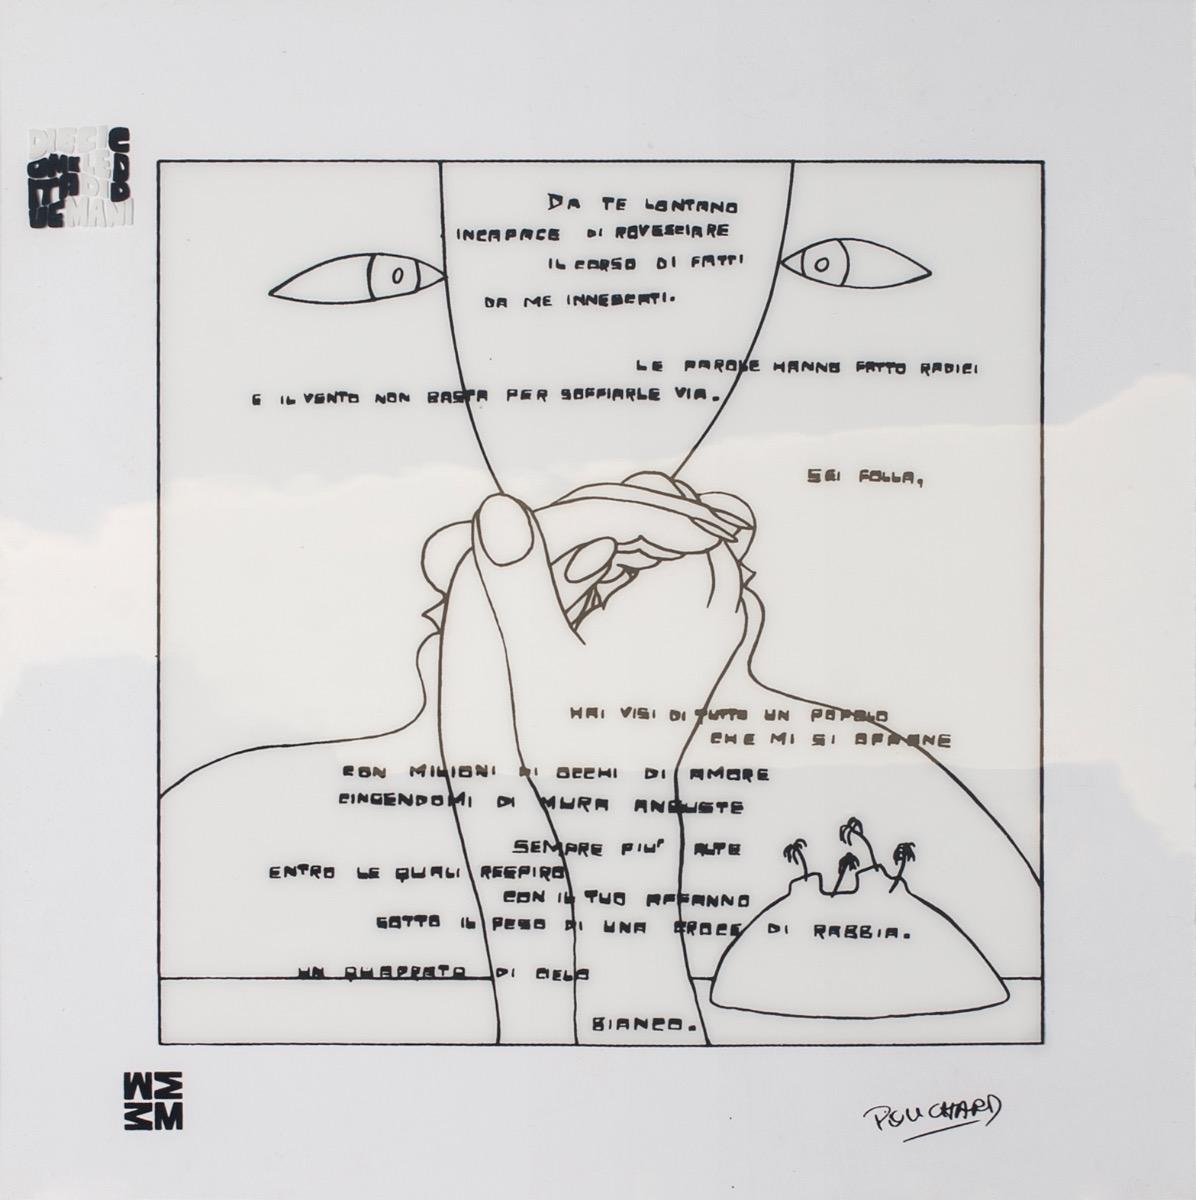 Diecicomeleditadiduemani - Serigrafía sobre acetato de Ennio Pouchard - 1973 